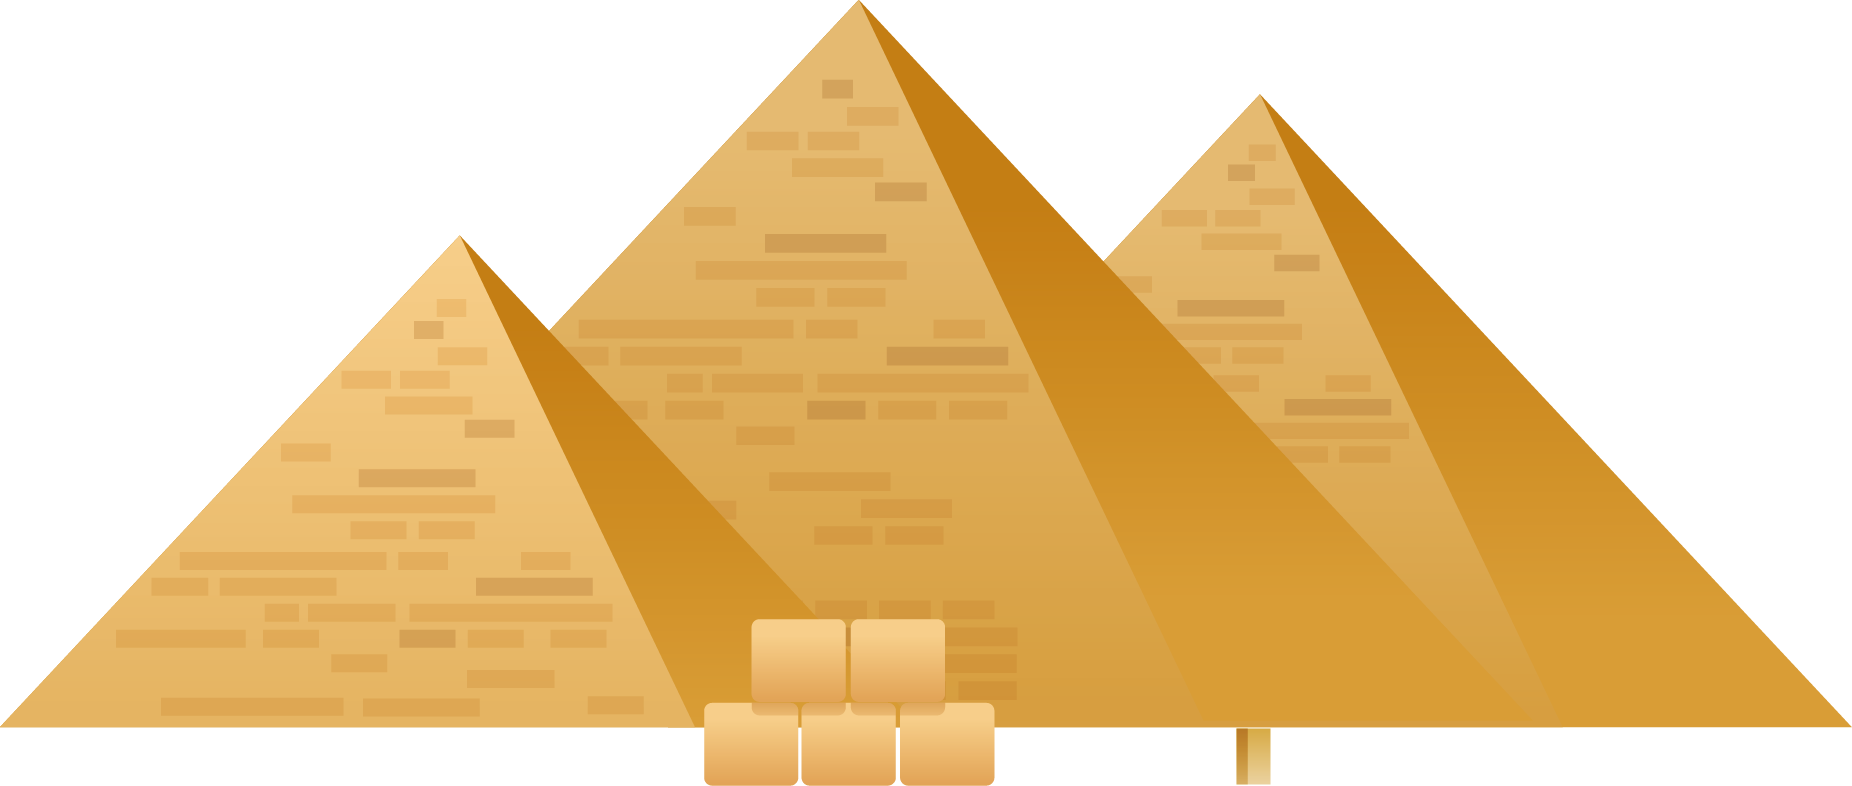 Пирамиды прозрачные изображения